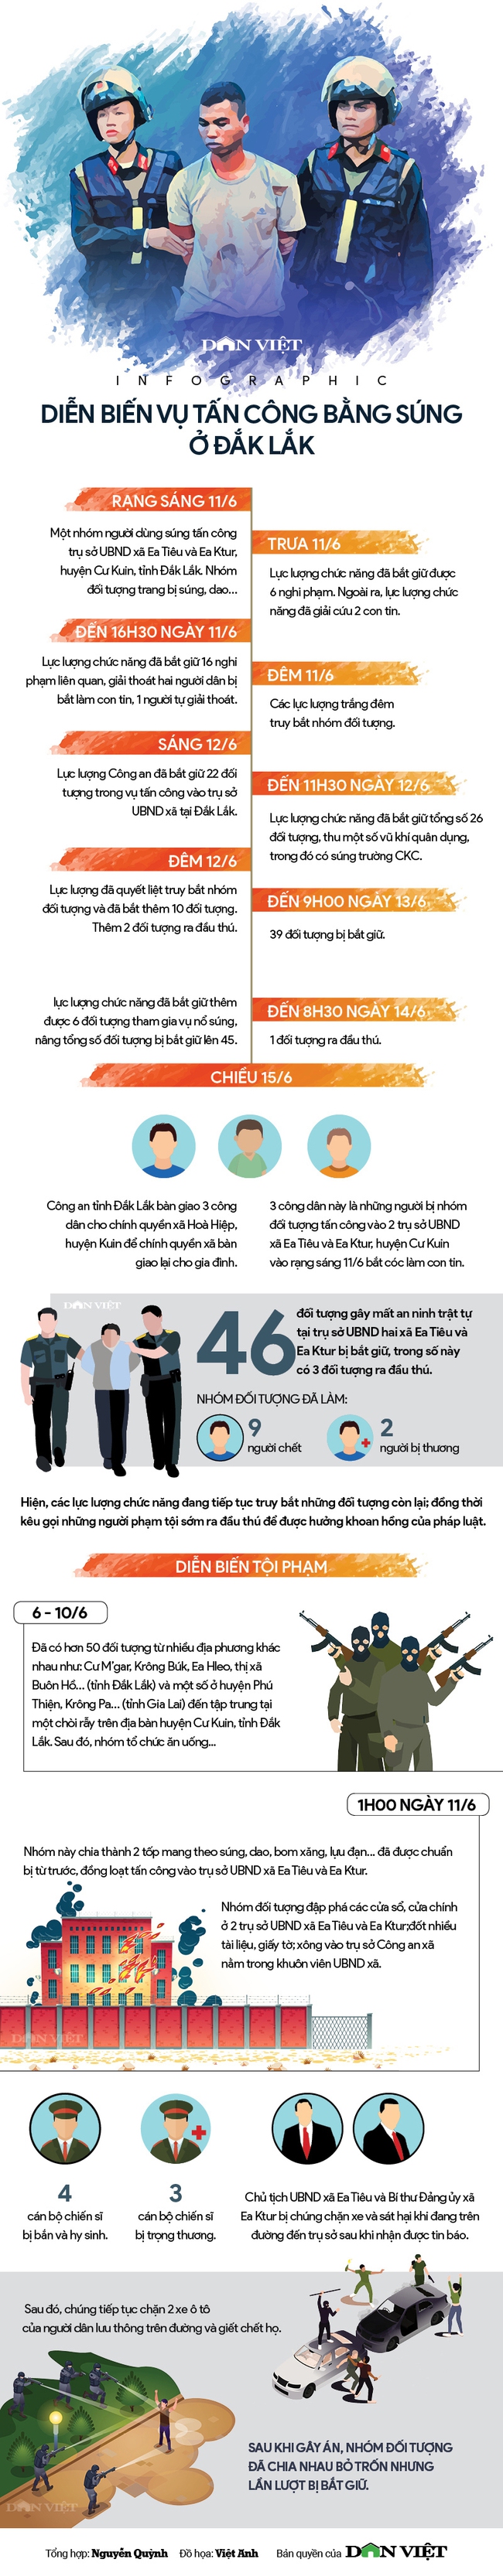 Infographic: Diễn biến vụ tấn công bằng súng vào trụ sở UBND xã tại Đắk Lắk - Ảnh 1.